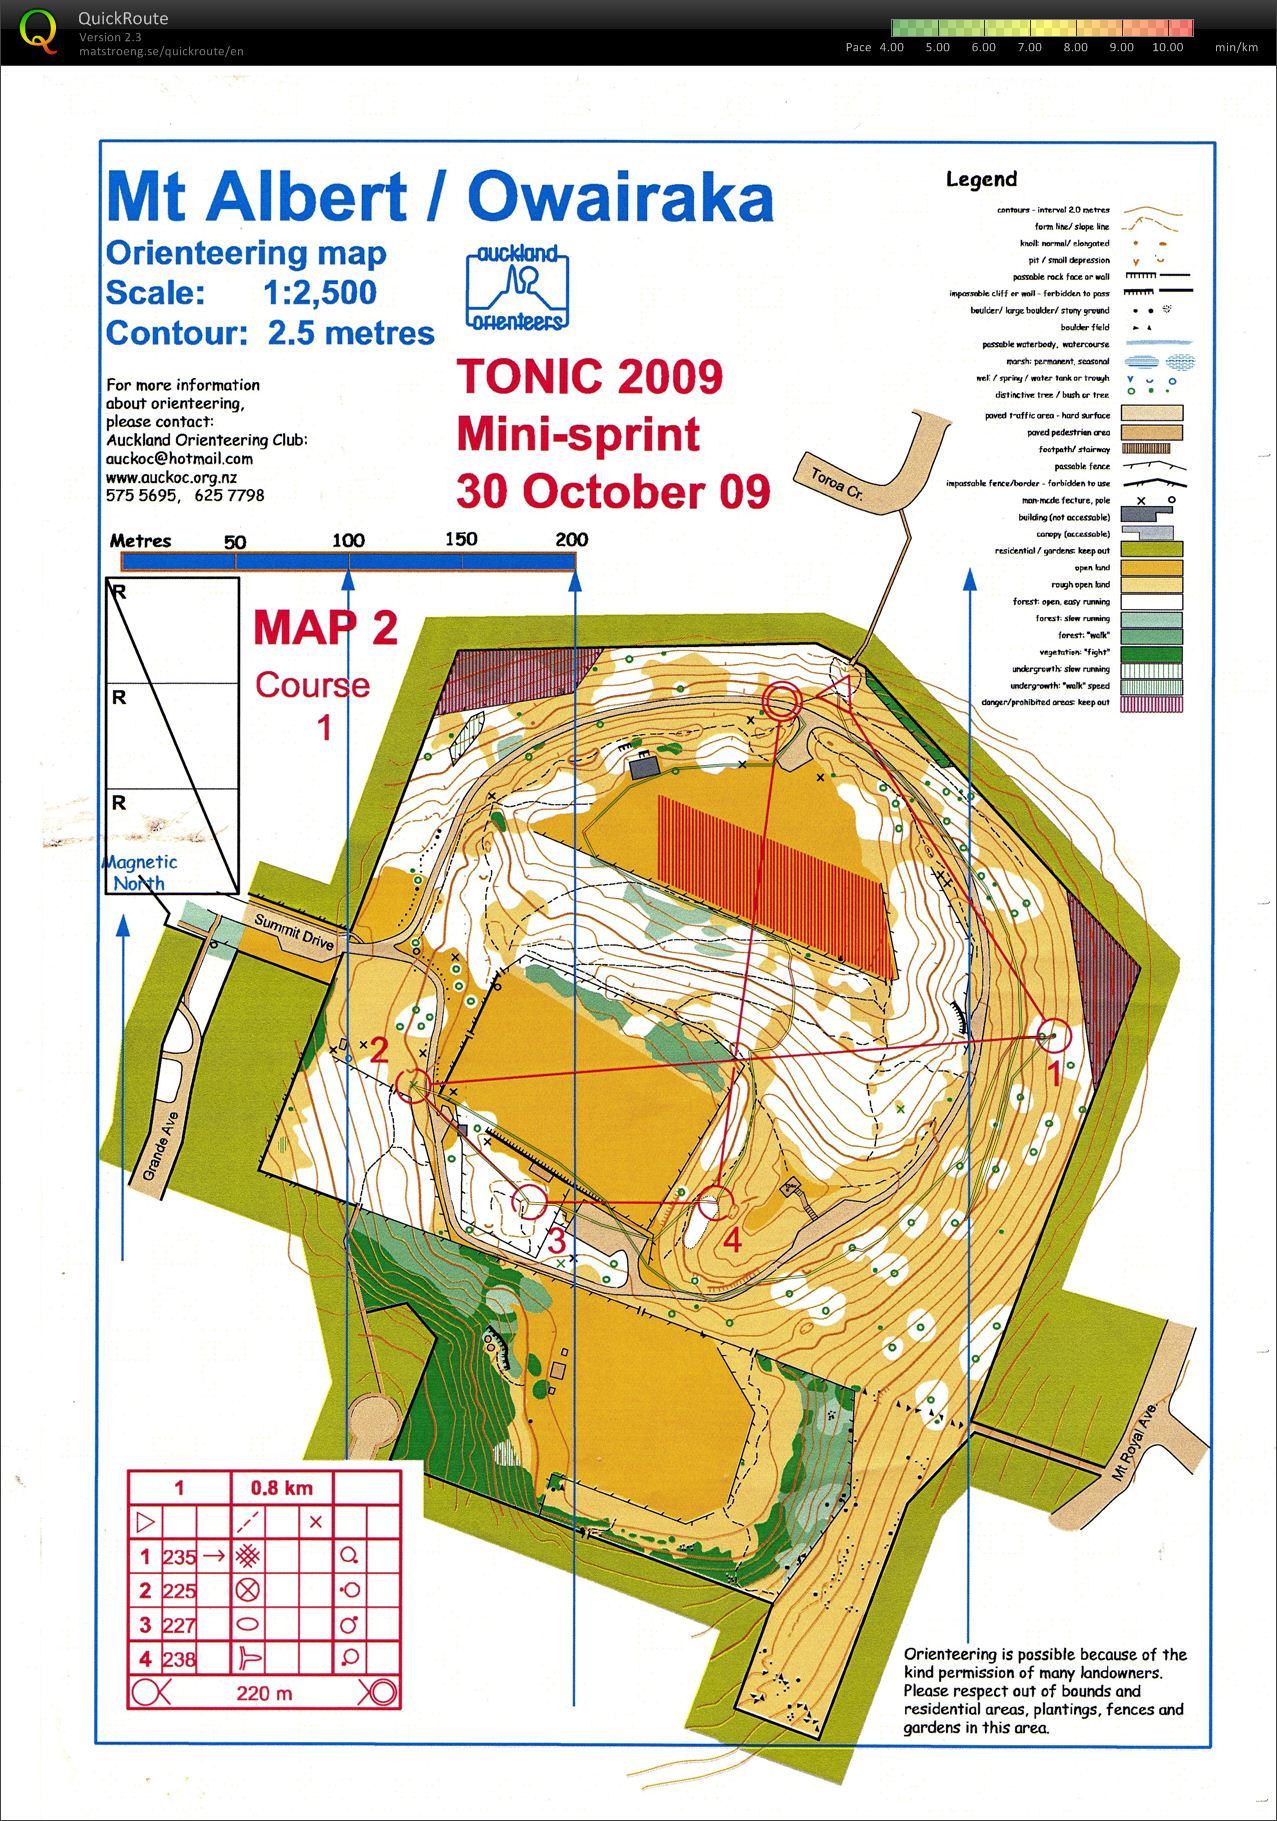 TONIC - Mini Sprints 2 (30-10-2009)